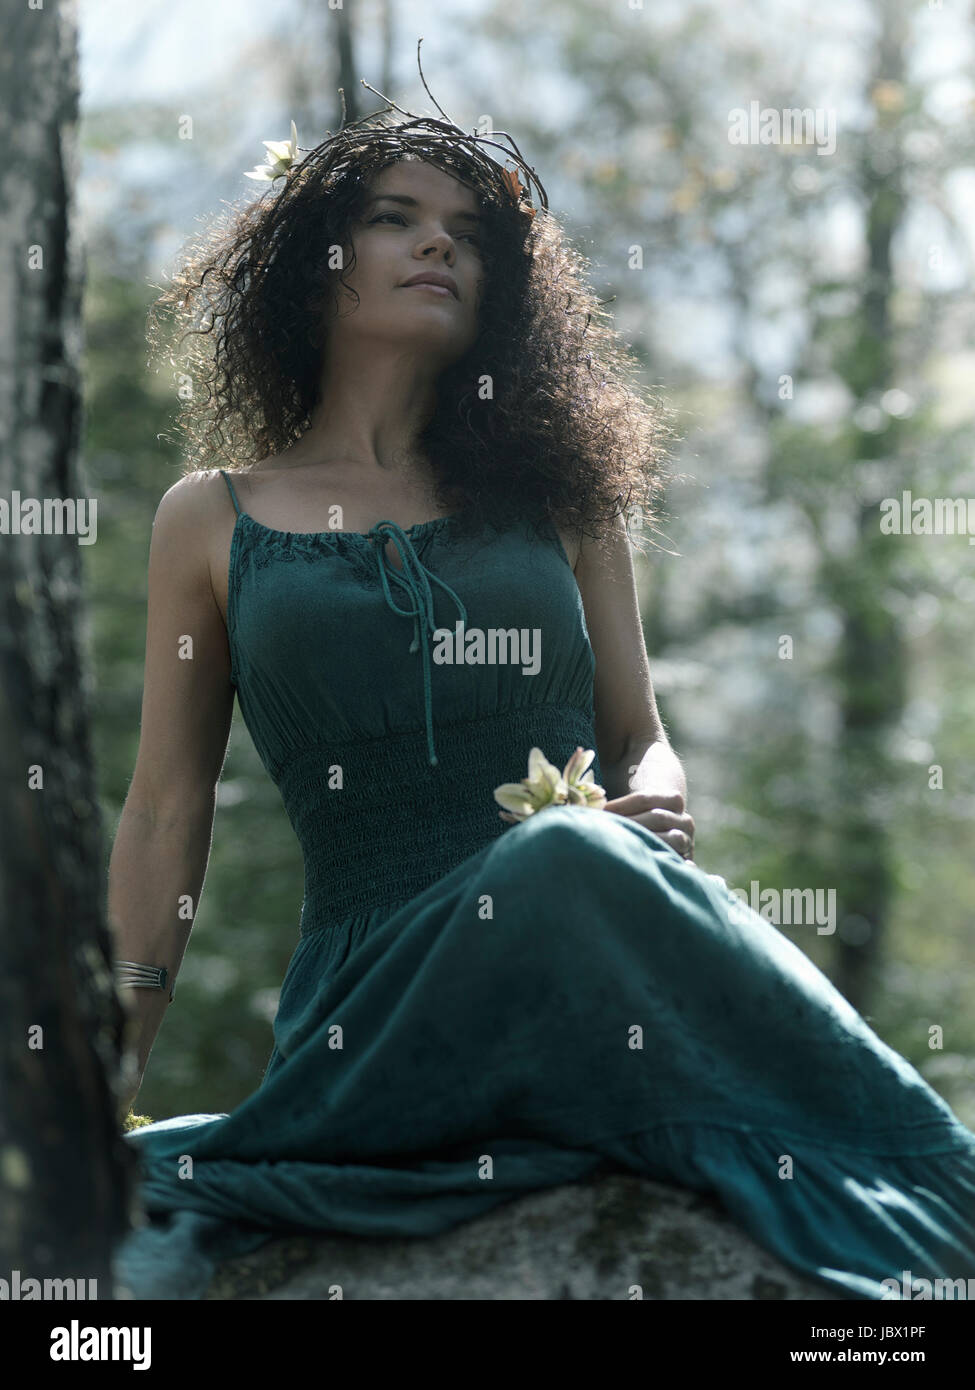 Licenza e stampe a MaximImages.com - artistico tranquillo ritratto di una bella giovane donna in un vestito verde e con una corona sulla testa Foto Stock